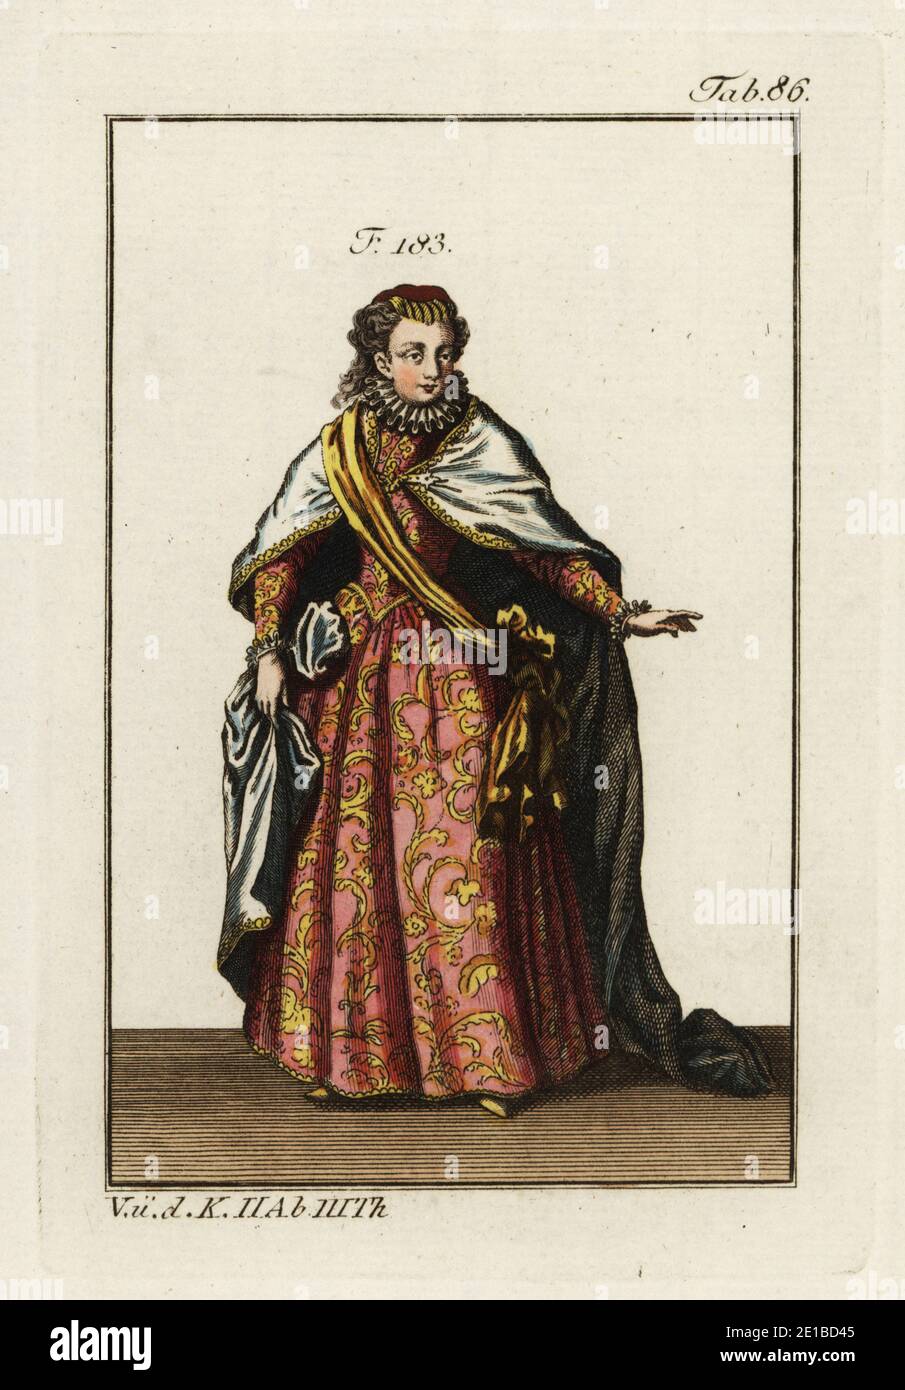 Dame de l'ordre de l'écharpe. Il a été établi par Jean I, roi de Castille, en 1390 pour immortaliser le rôle des femmes de Placentia qui ont contribué à lever le siège de leur ville par les Anglais. Elle fut ensuite unie à l'ordre de la Sash (ordre de la Bande). La femme porte le foulard en or caractéristique de l'ordre sur ses robes. Copie d’une illustration de Christoph Weigel dans Ritter-Ordern de Philipp Bonanni, 1728. Gravure en coperplate de couleur main de la photo historique de Robert von Spalart des costumes du peuple principal de l'Antiquité et du Moyen-âge, Vienne, 1802. Banque D'Images